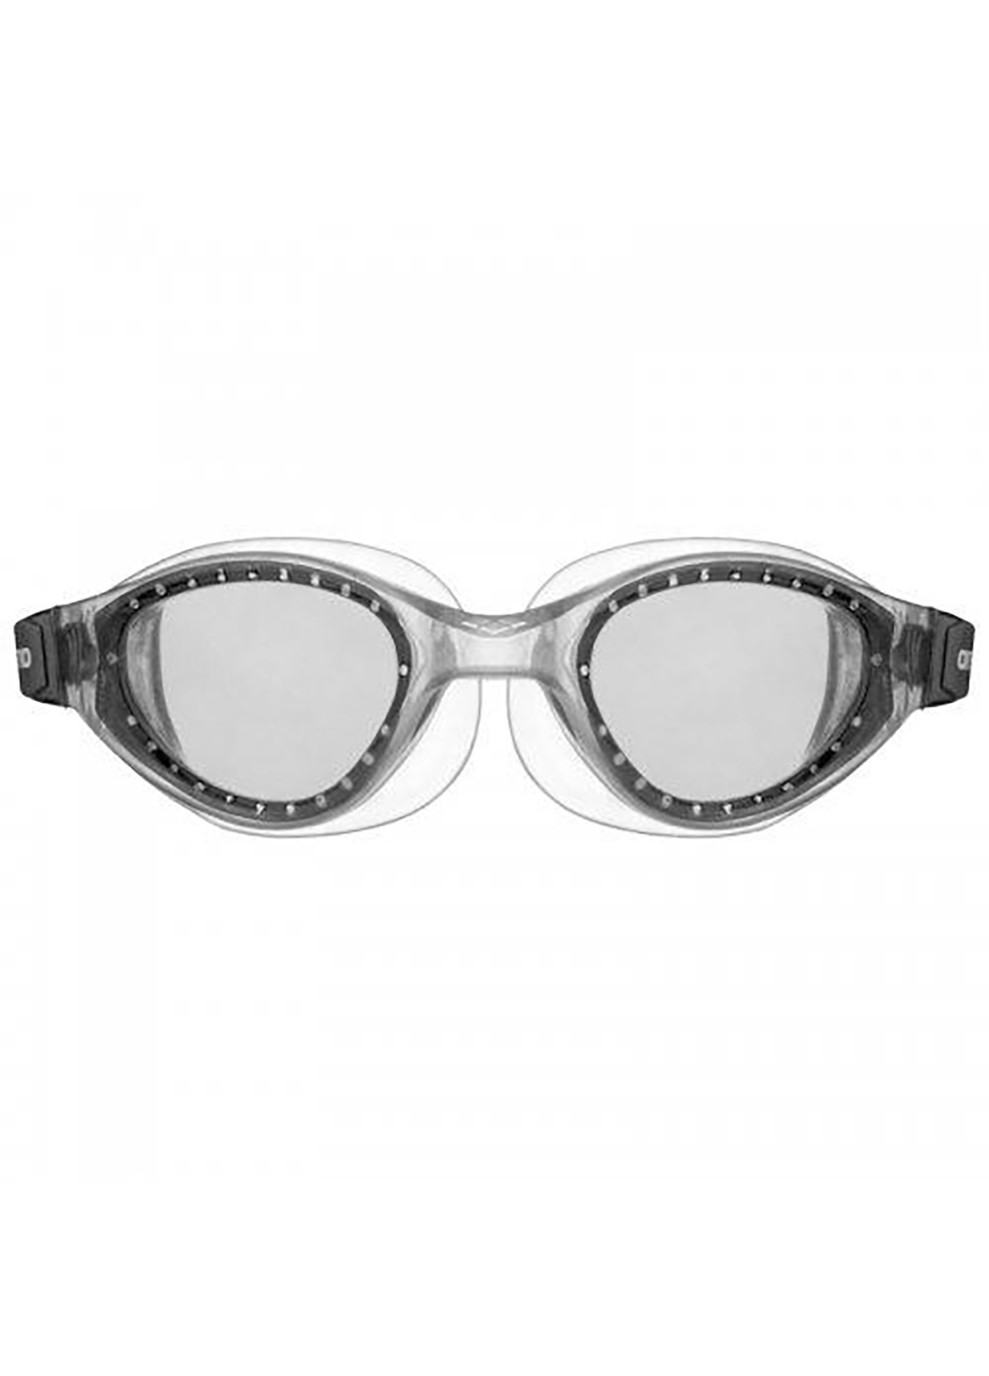 Очки для плавания CRUISER EVO дымчатые, прозрачные (unisex) OSFM Arena (259215179)